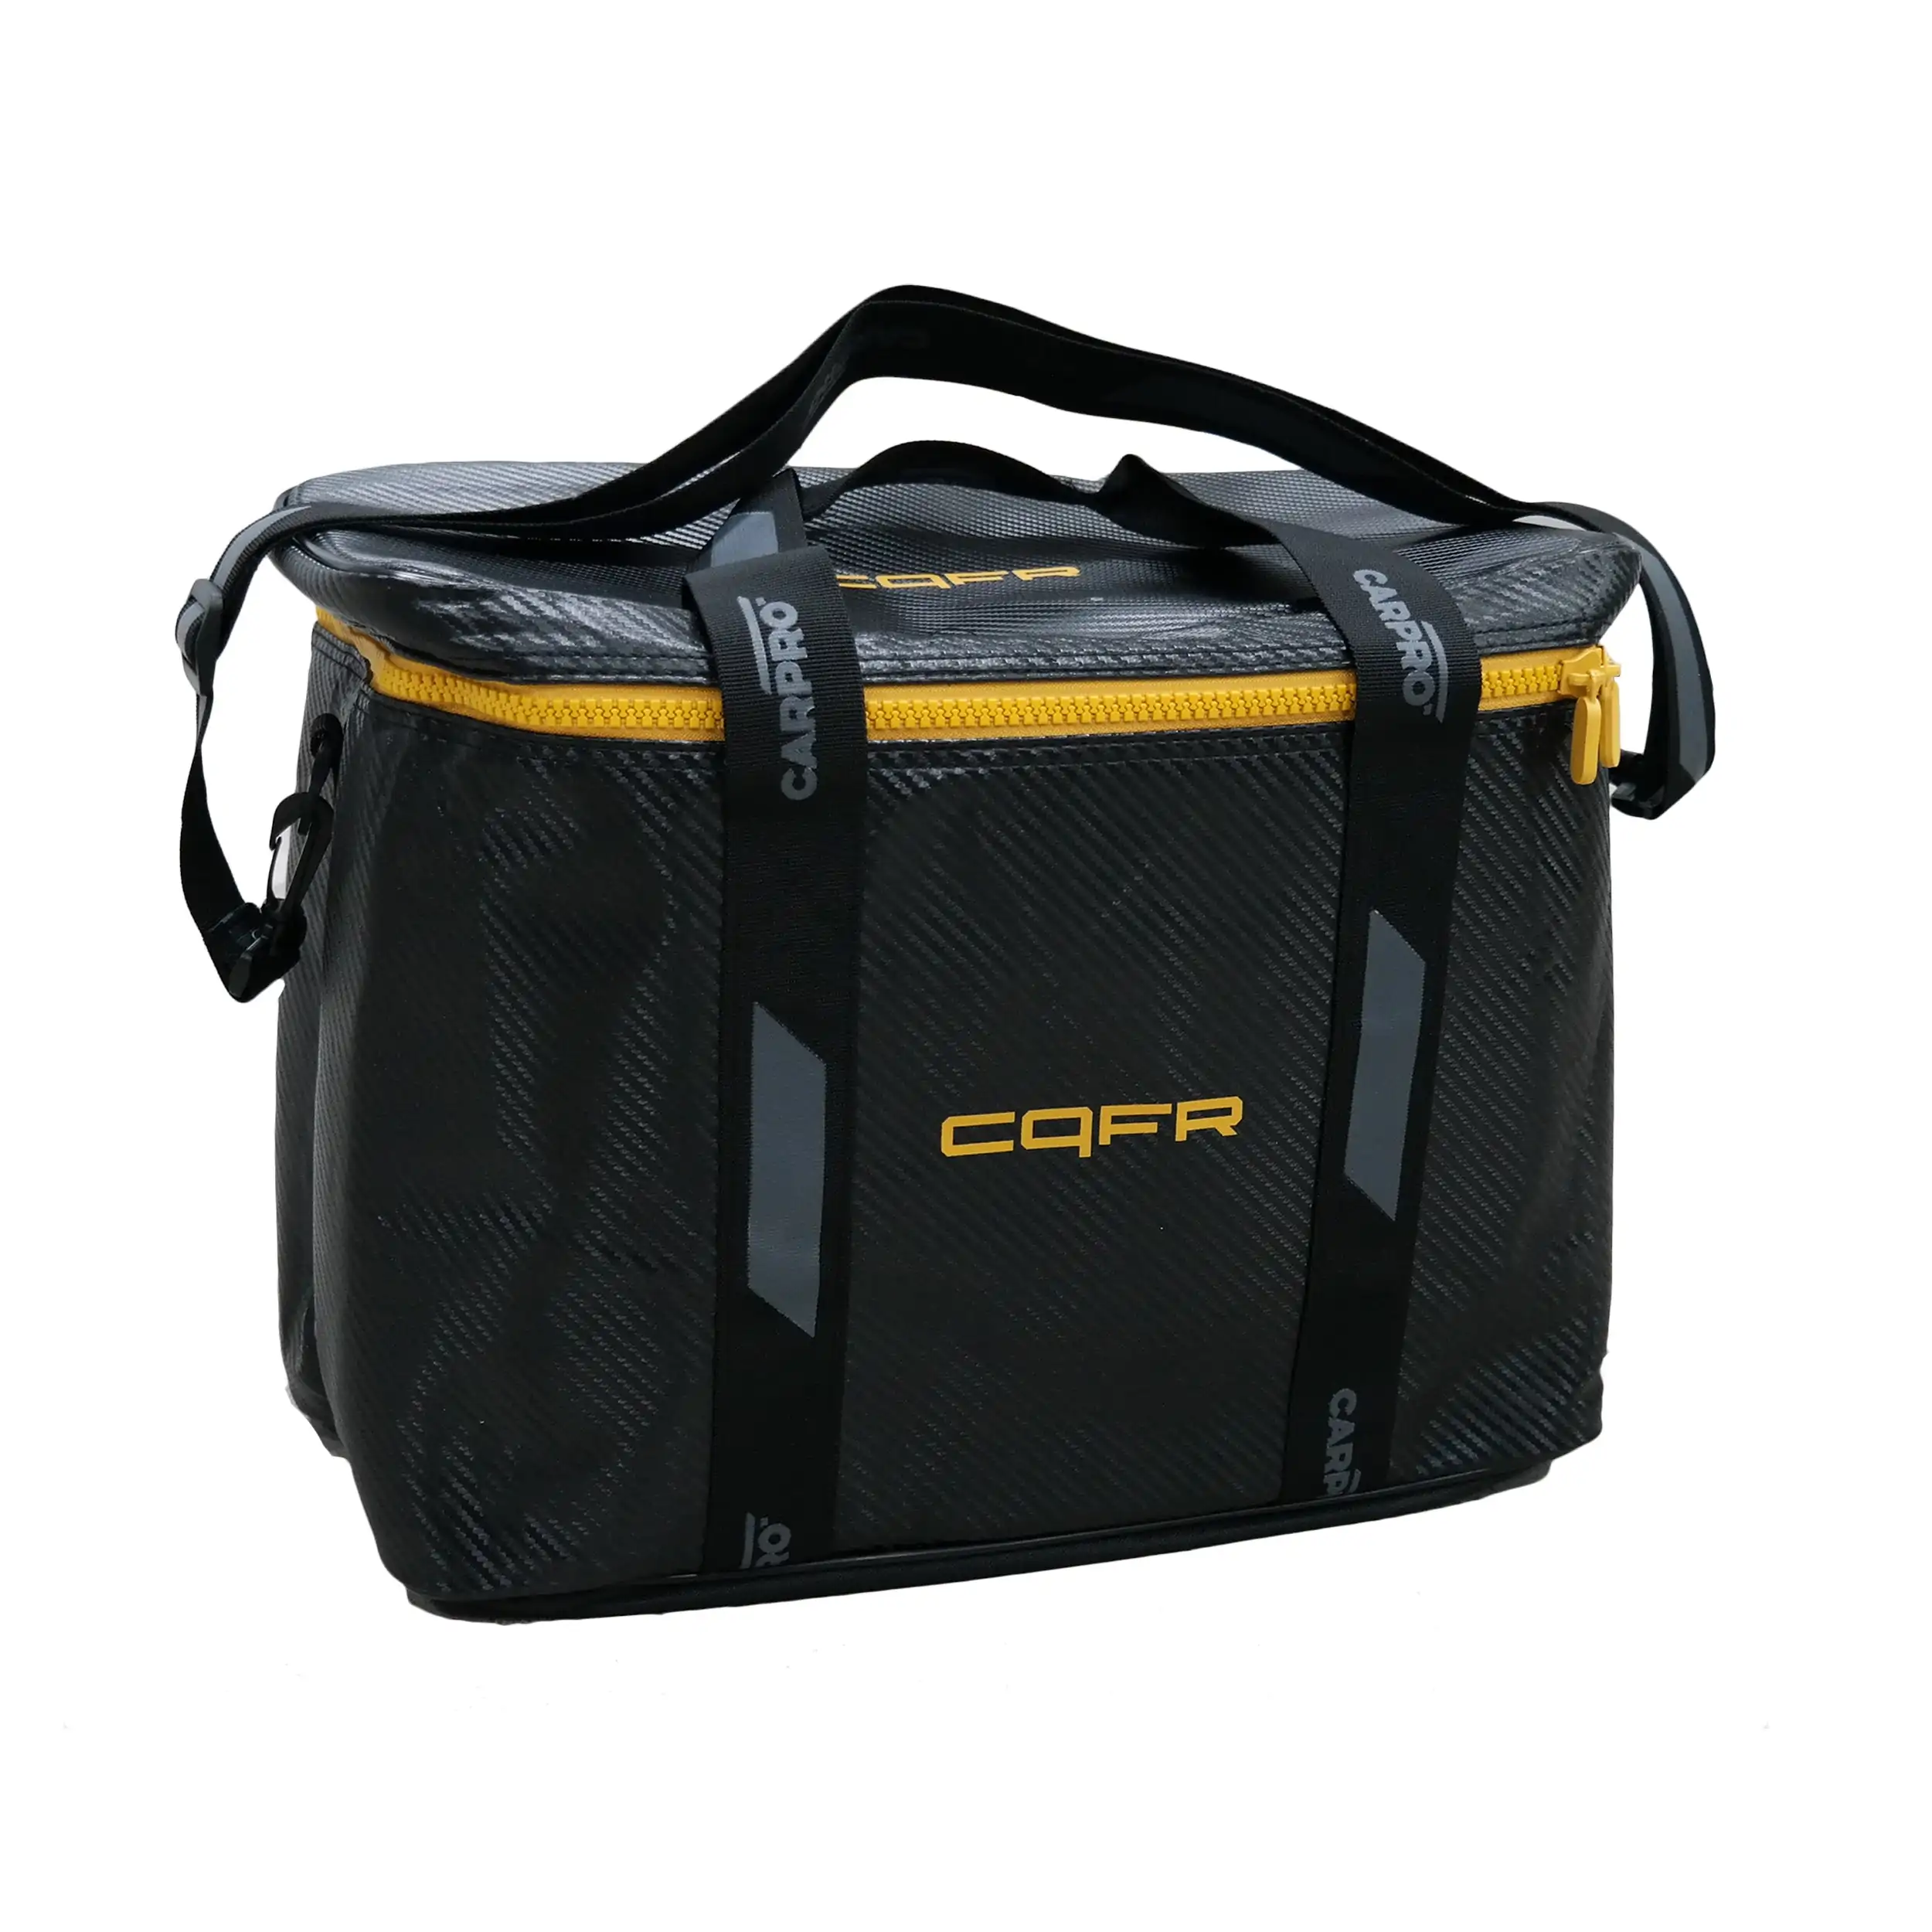 Малая сумка детейлера CarPro Maintainence bag CQFR